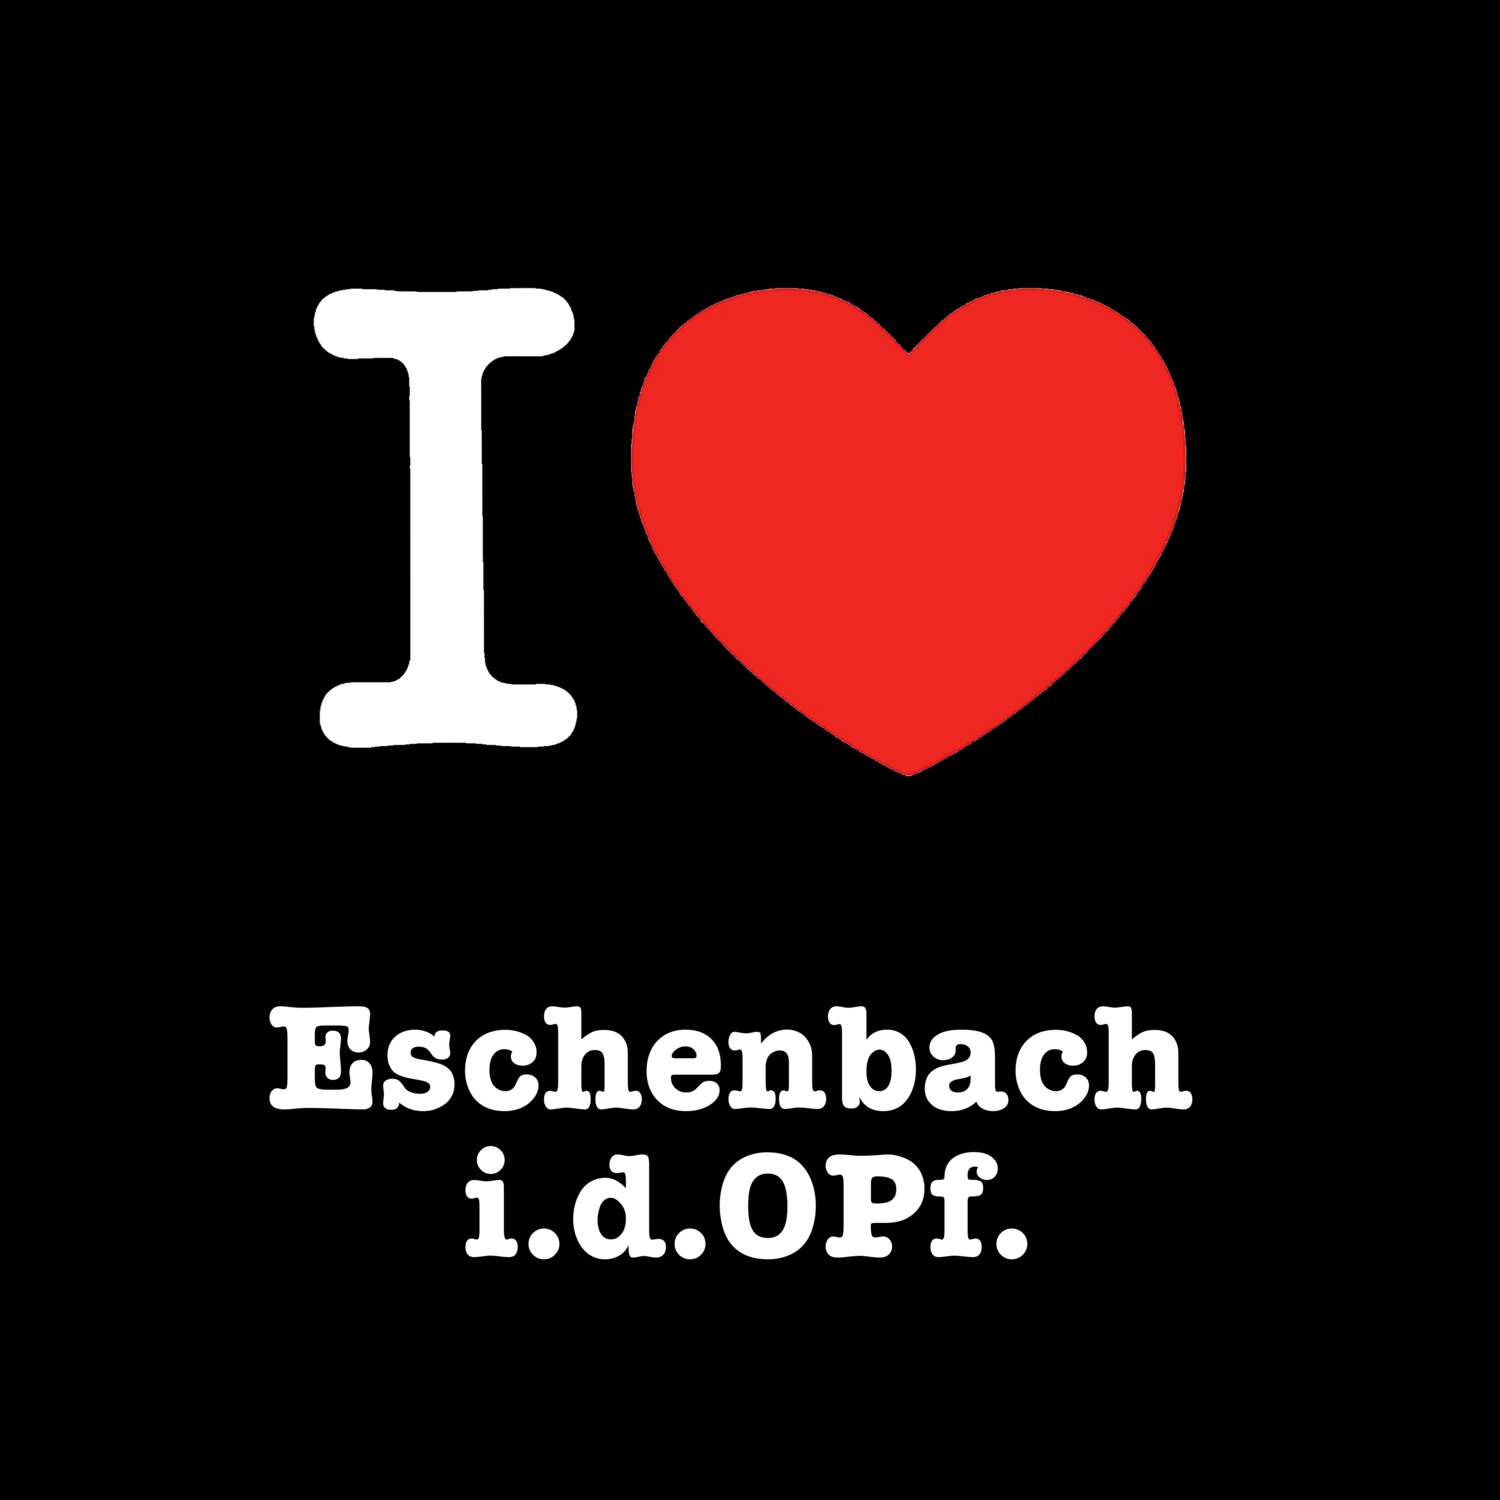 Eschenbach i.d.OPf. T-Shirt »I love«